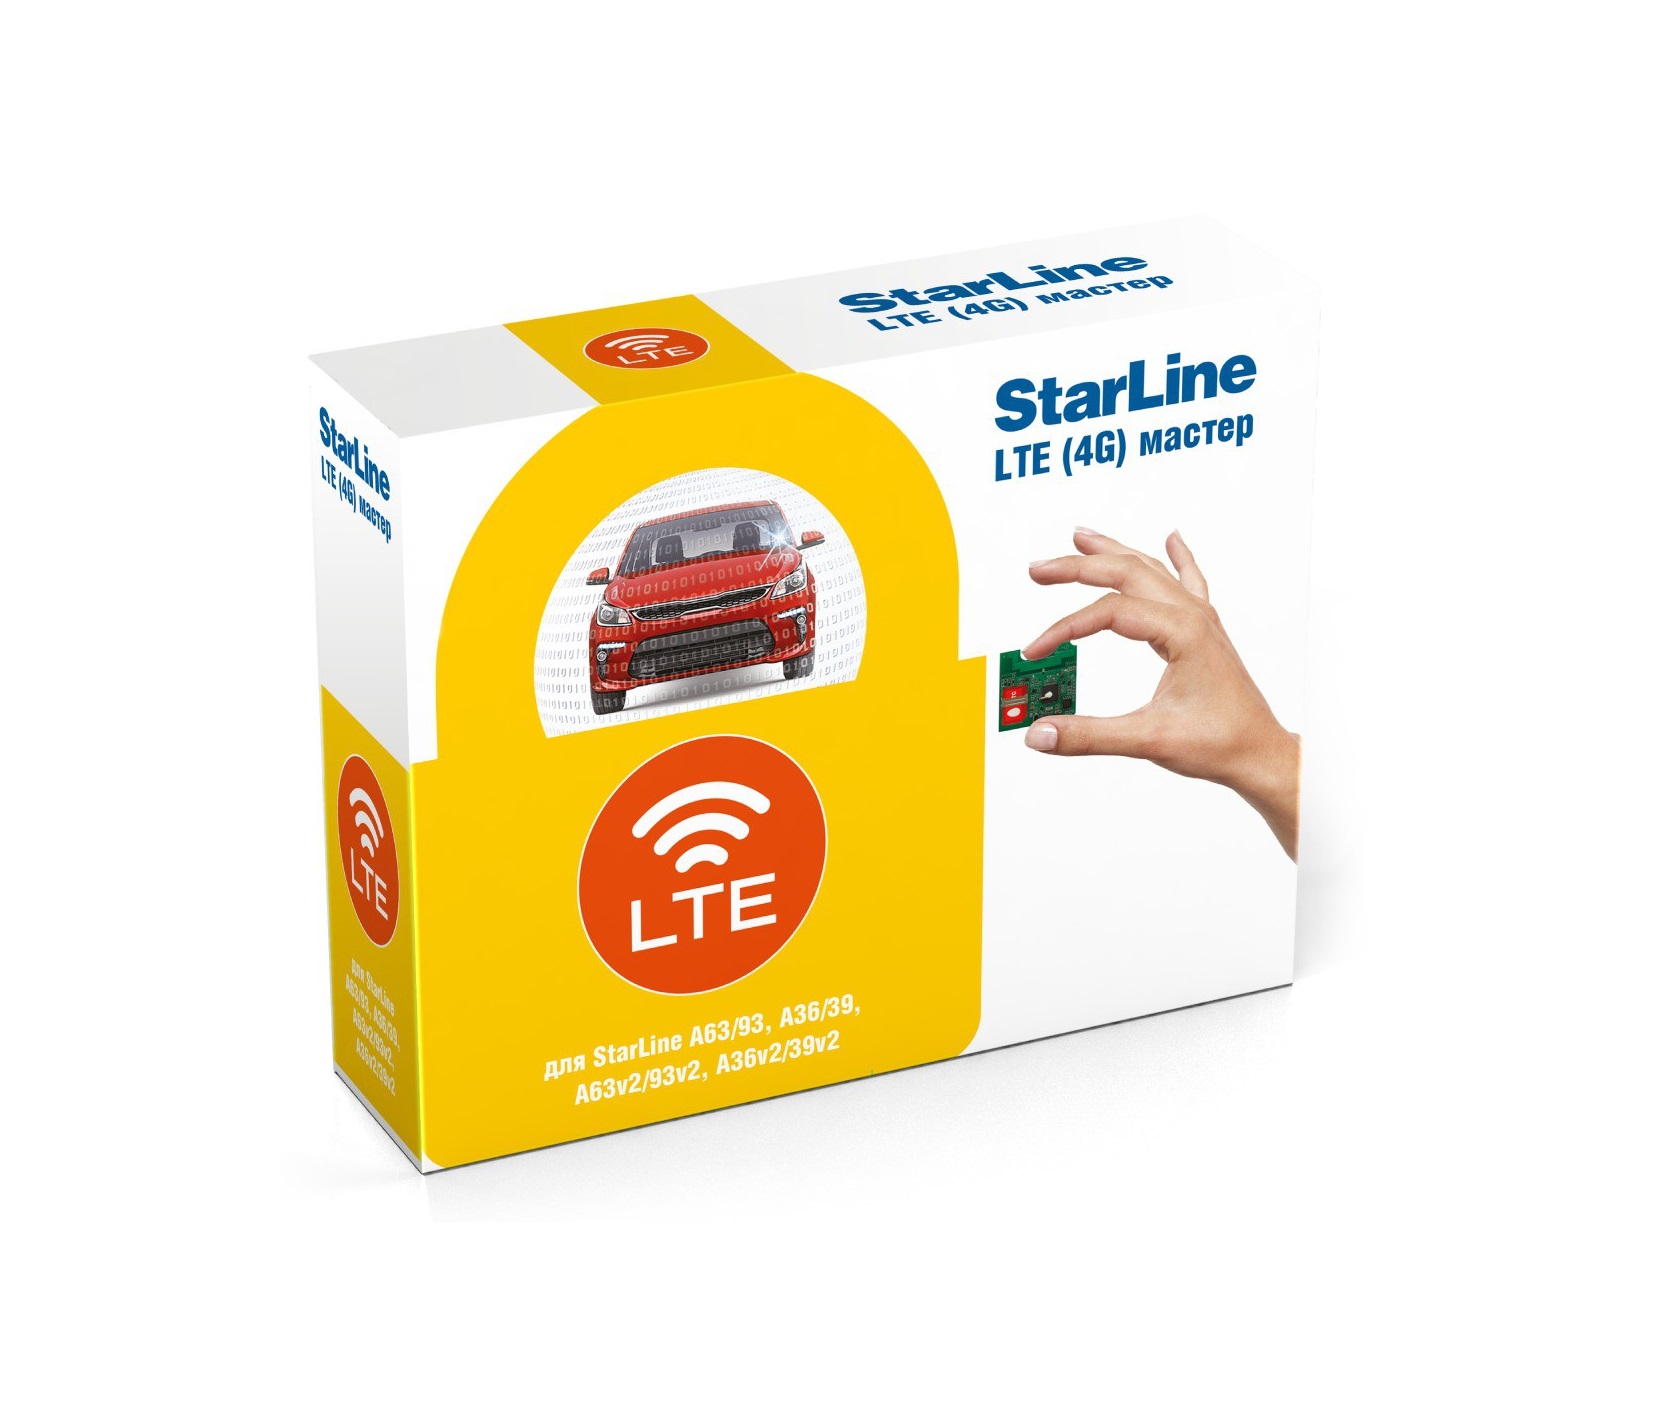 Опциональный модуль Starline GSM LTE (4G) Мастер